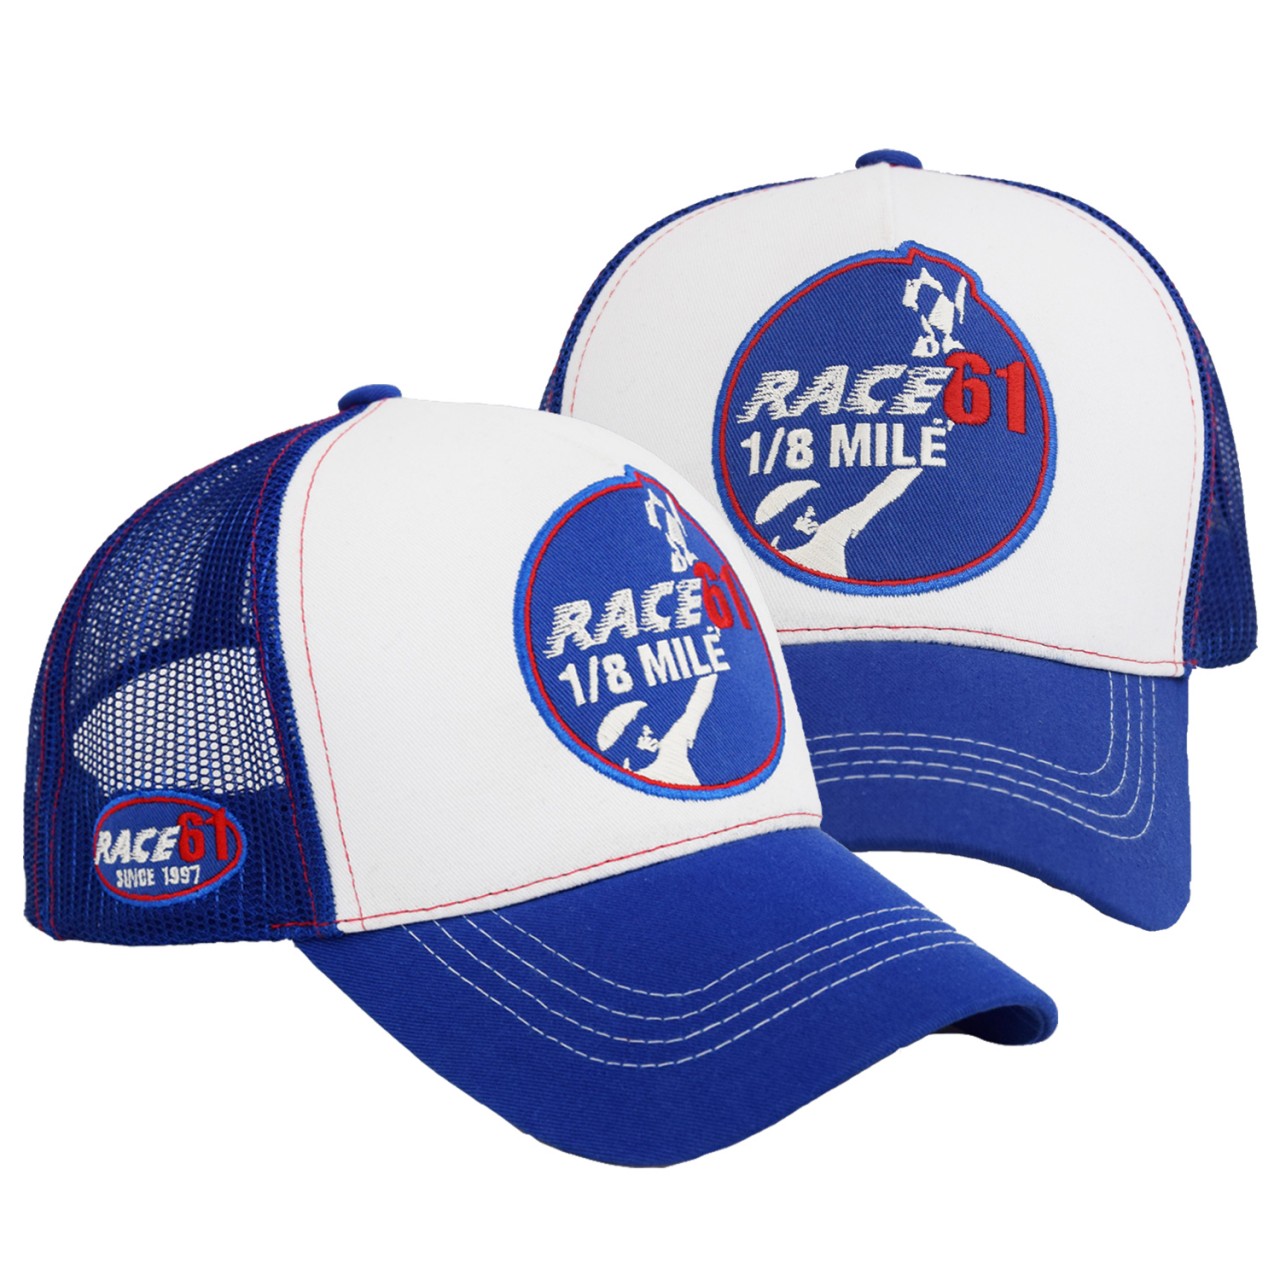 Race 61 1/8 MILE blau/weiß Truckercap mit Stickerei Unisex